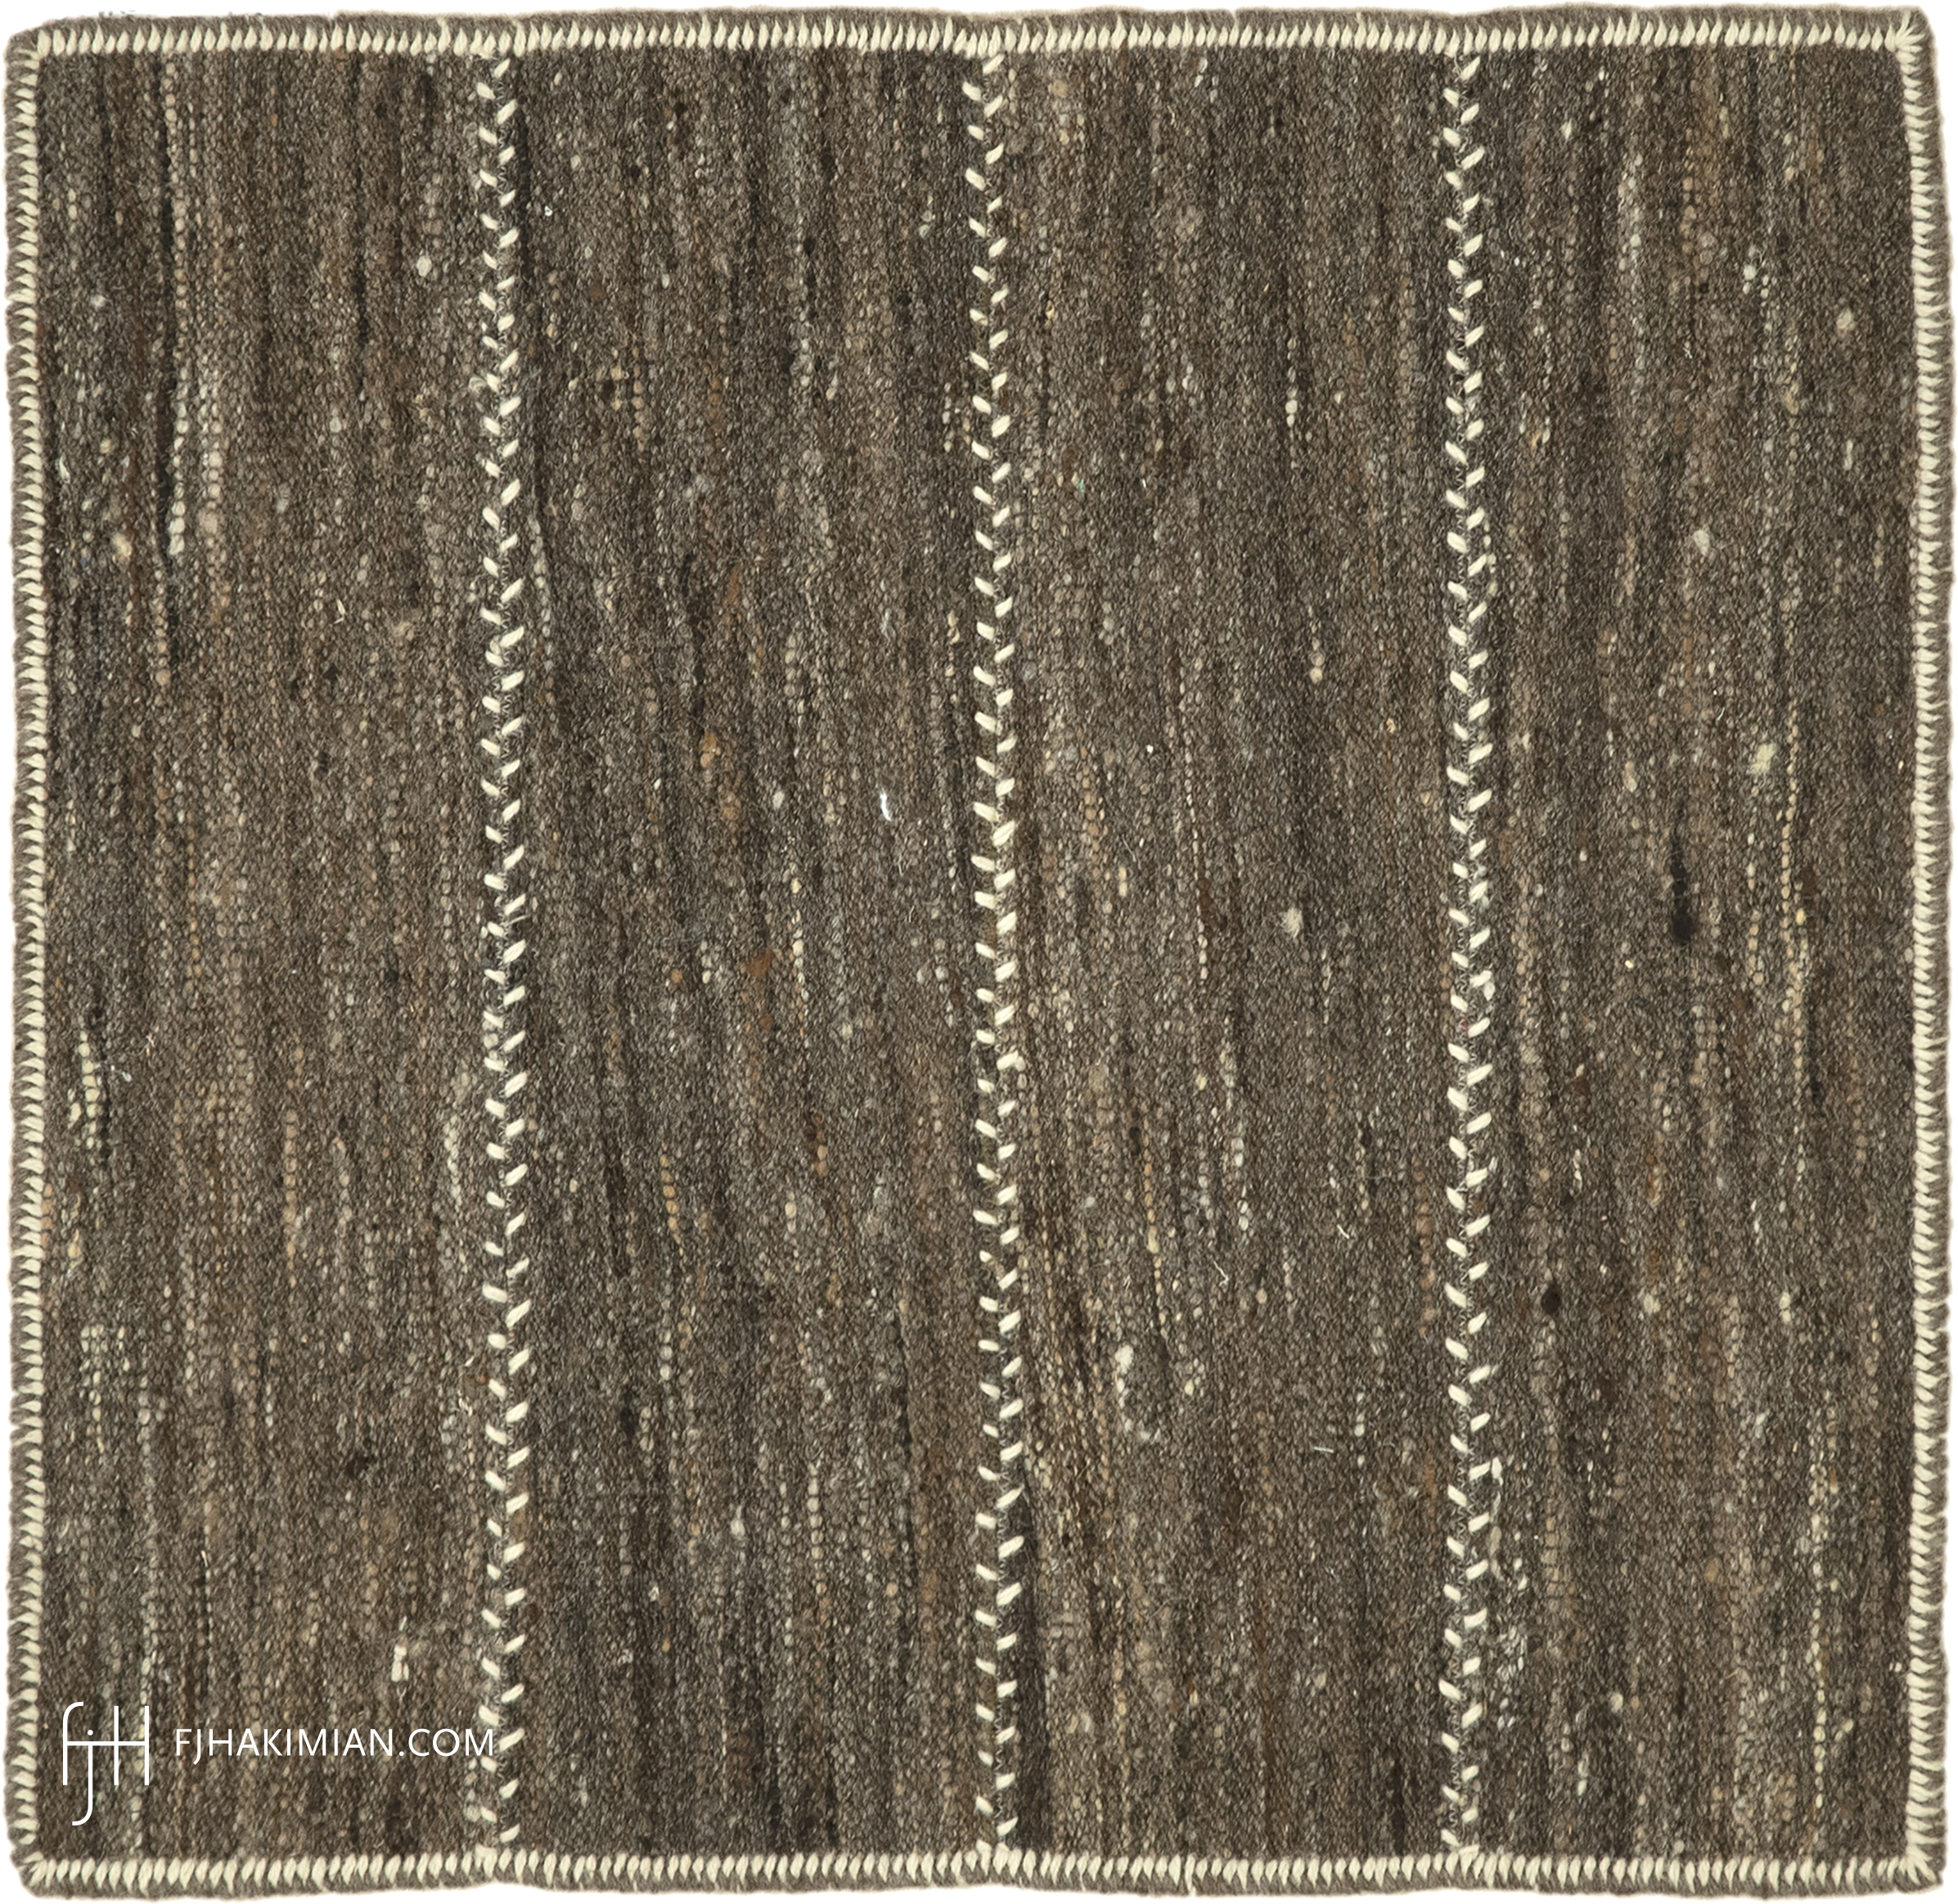 FJ Hakimian | 47411 | Custom Carpet